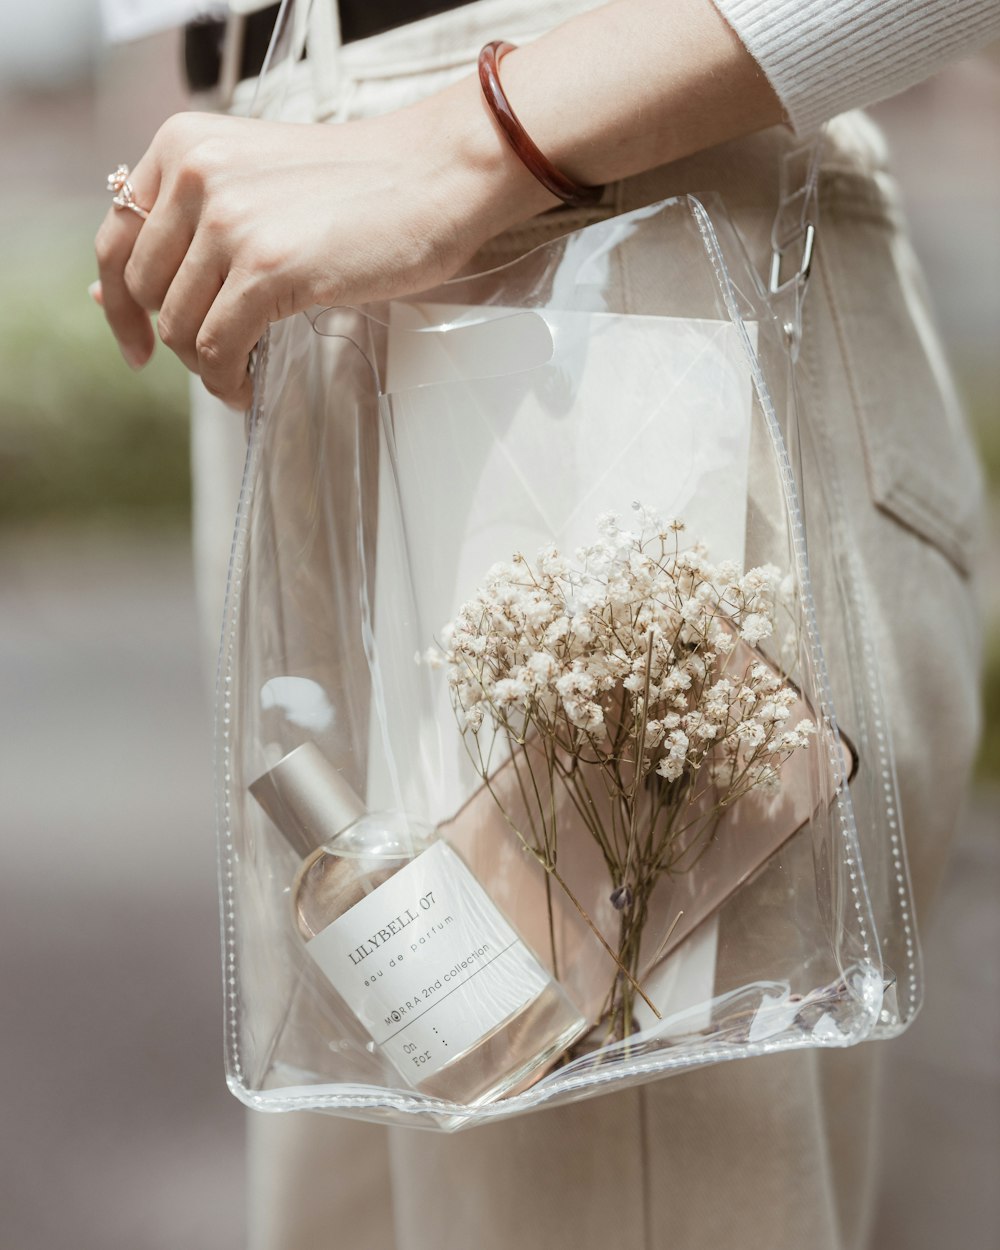 uma pessoa segurando um saco transparente com flores nele